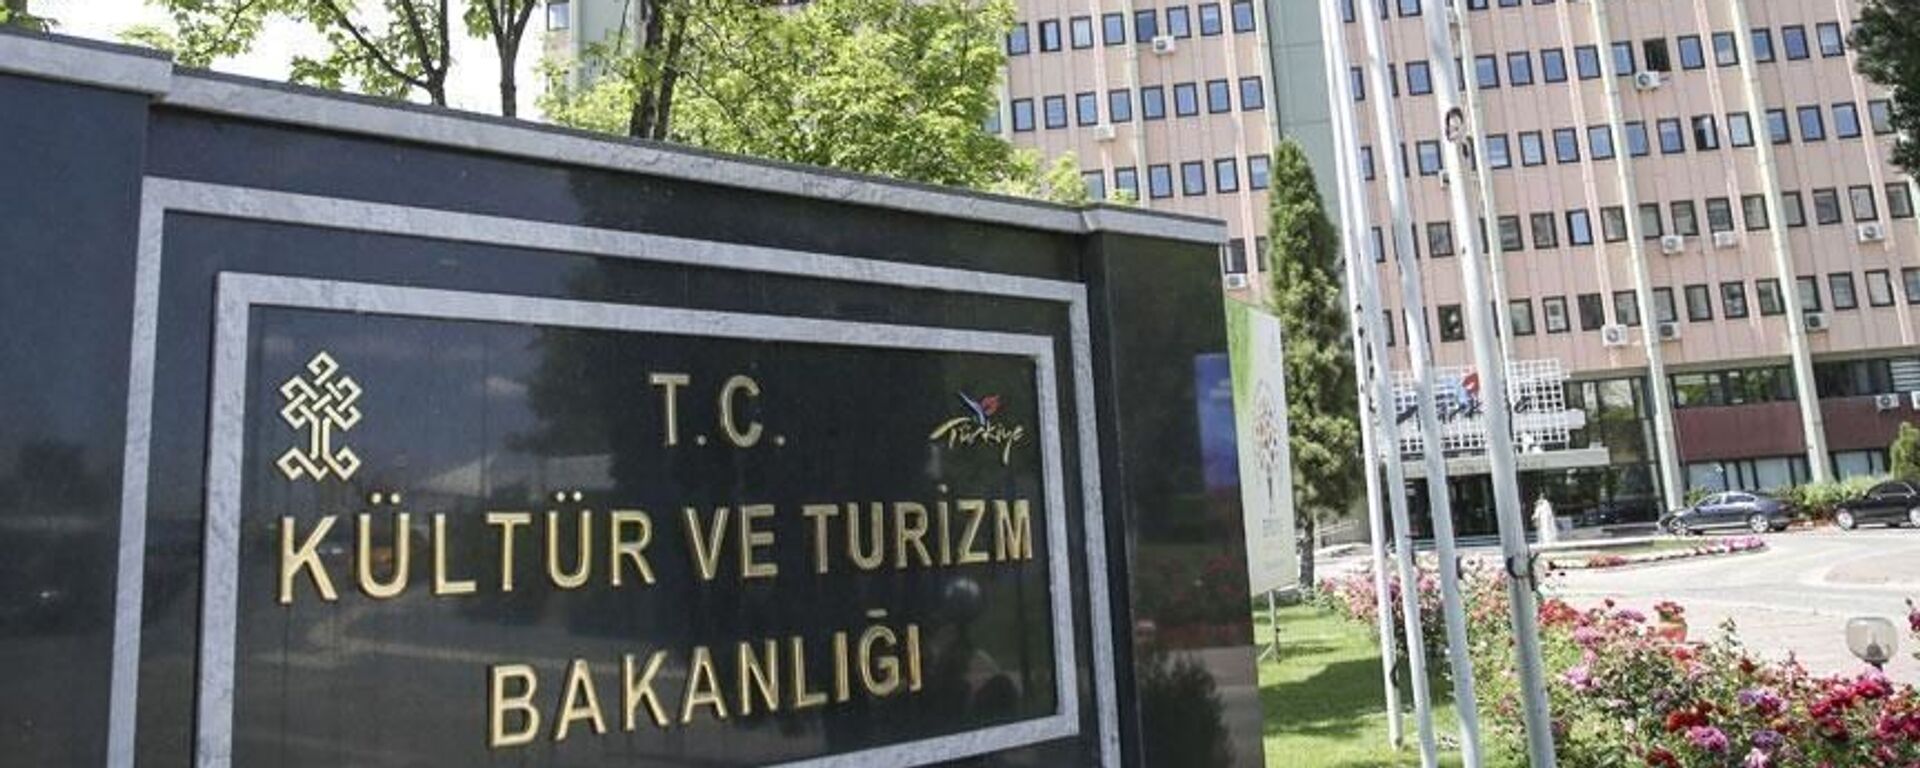 Kültür ve Turizm Bakanlığı - Sputnik Türkiye, 1920, 24.12.2021